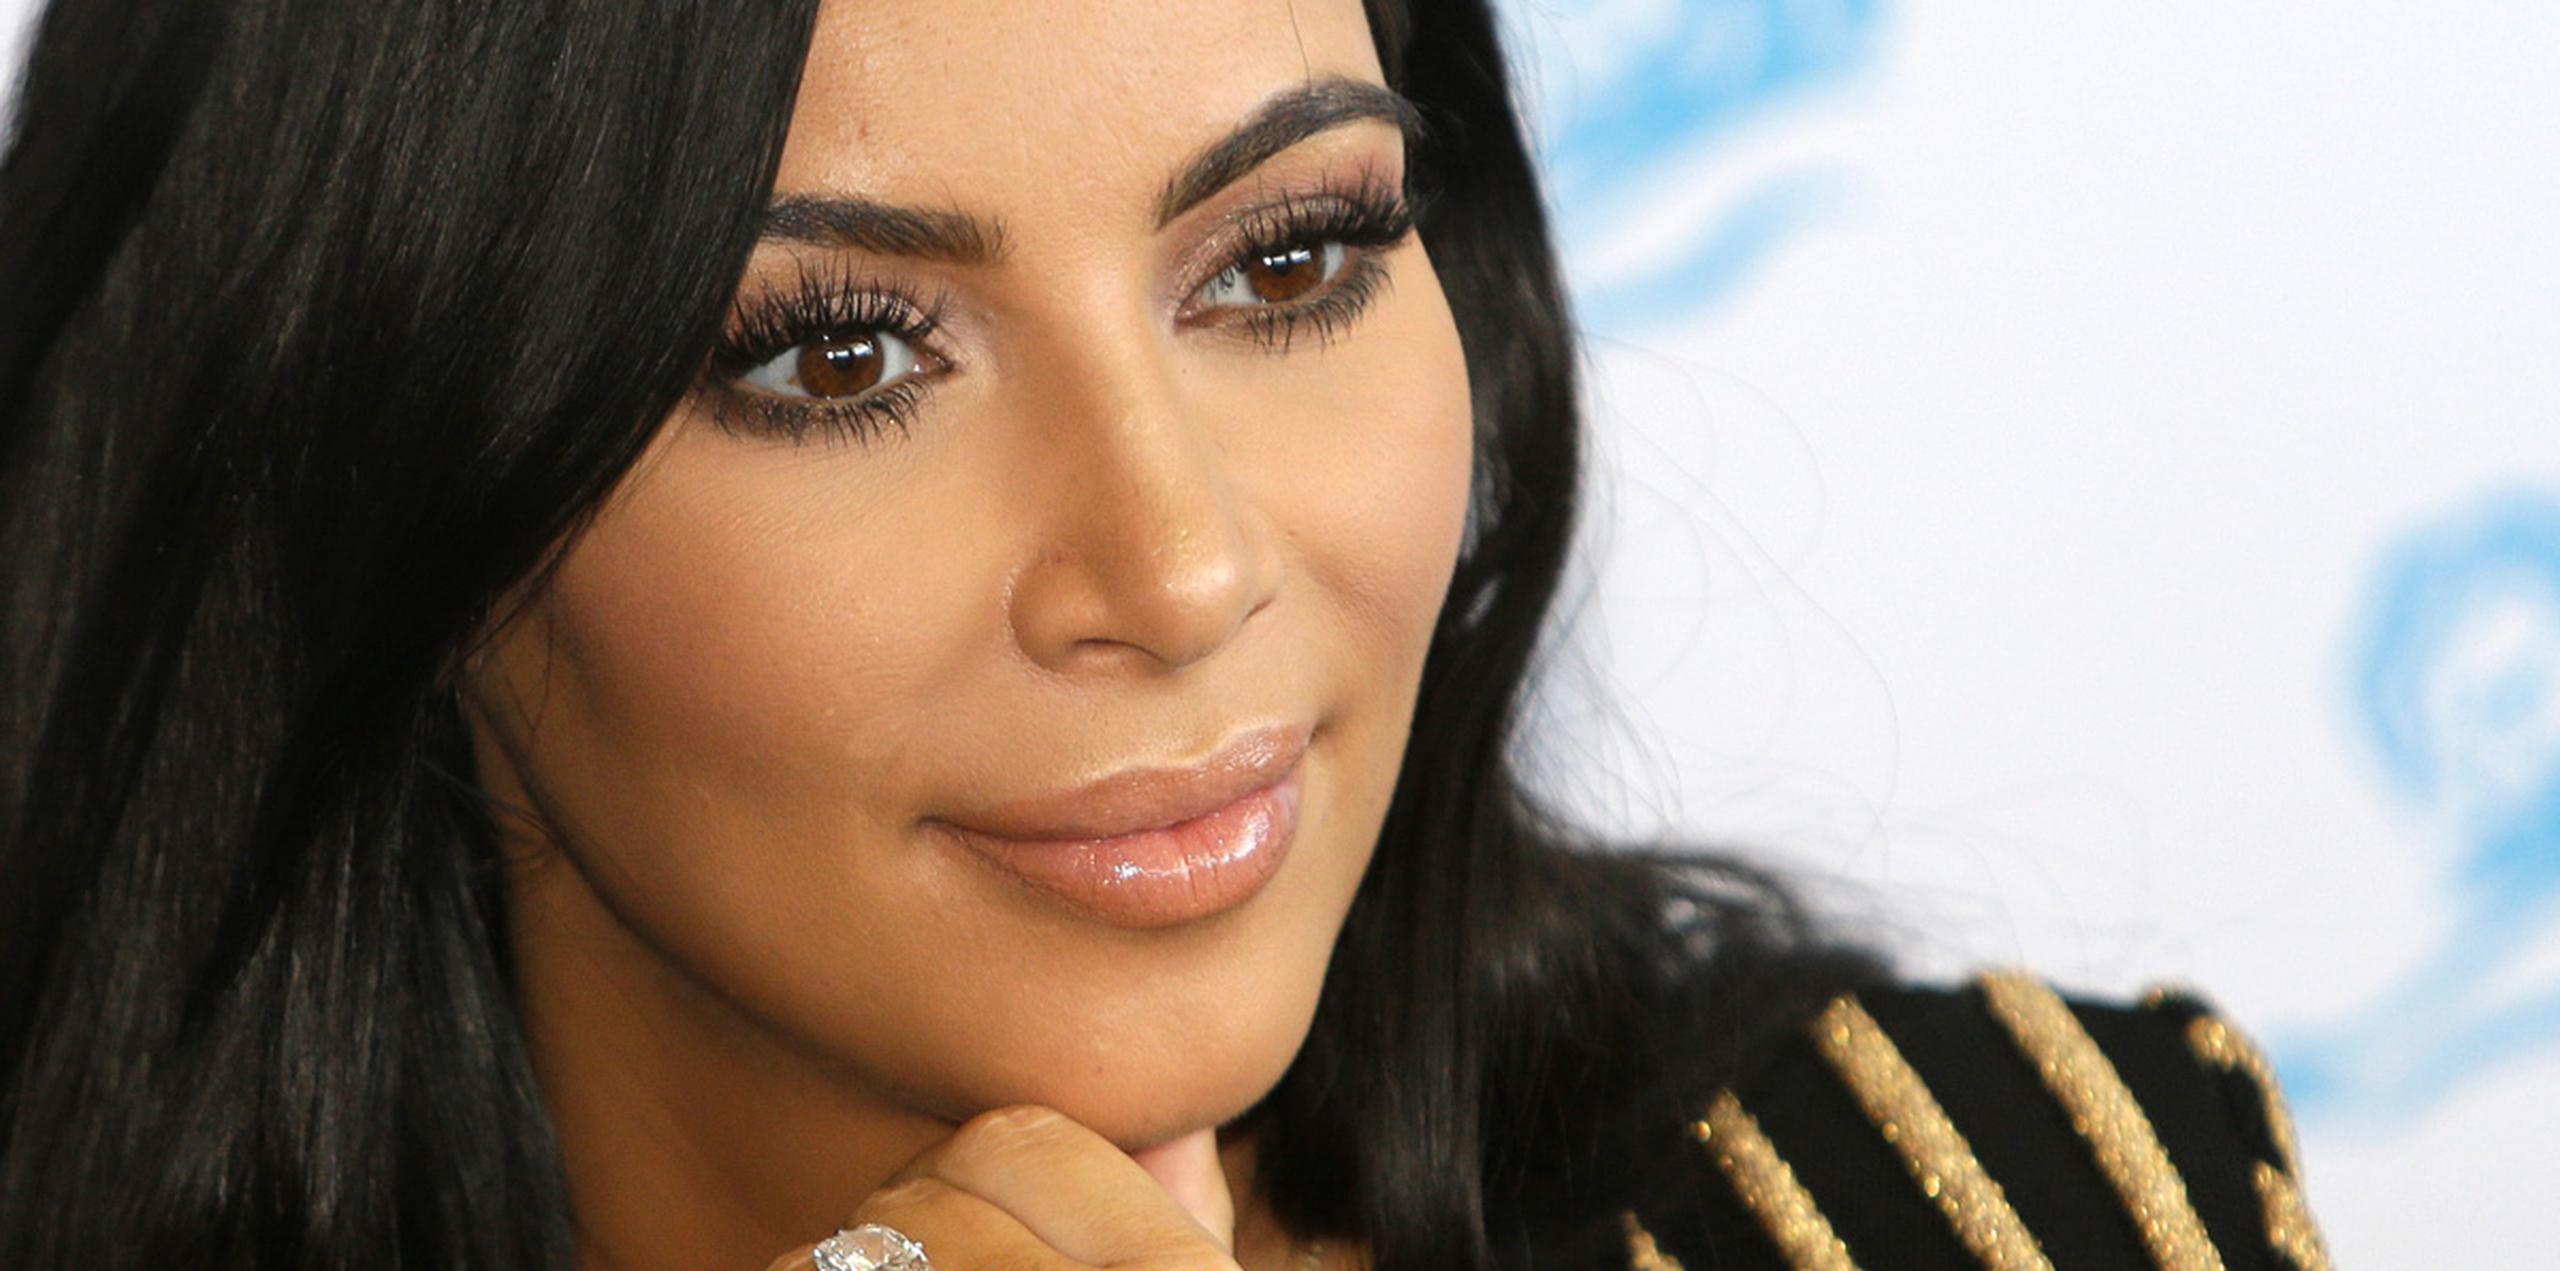 Las autoridades se centran en la posibilidad de que una persona del entorno de Kardashian participara en el robo. (AP)